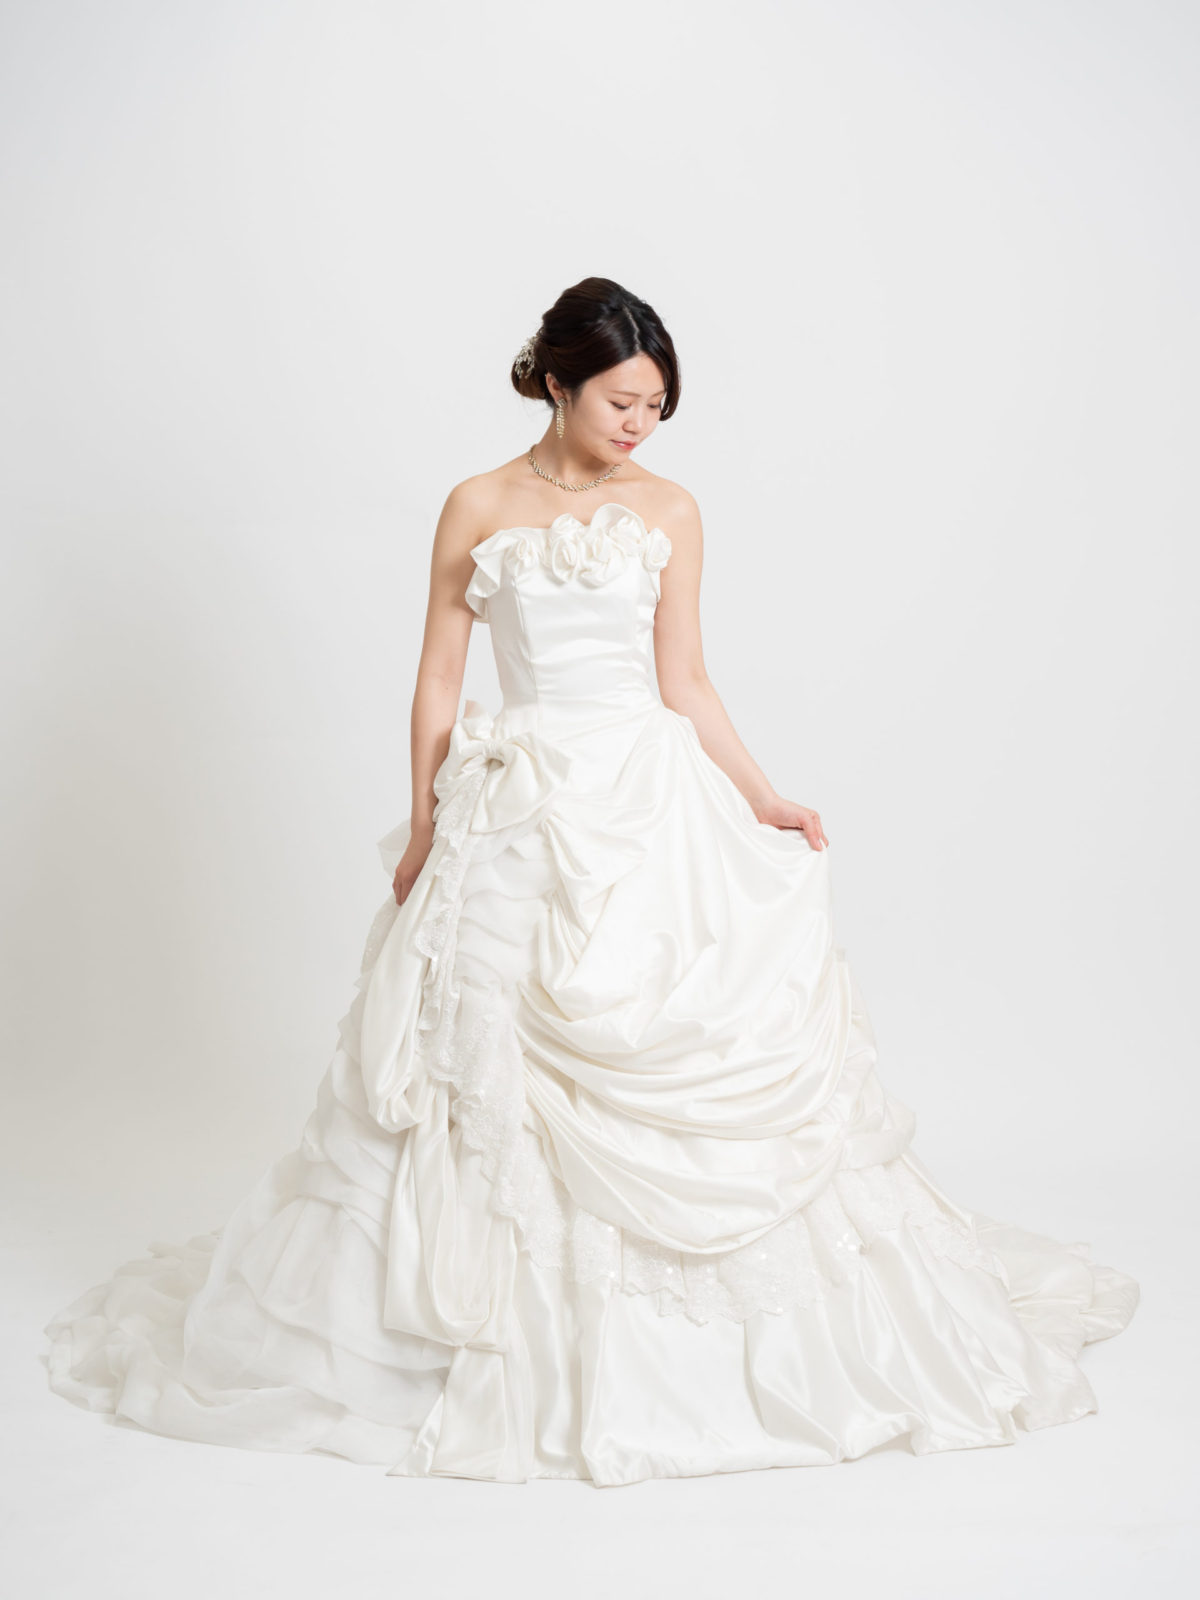 Weddingdress_050 | ウェディングドレス・カラードレスの格安レンタル | 福岡・九州でフォトウェディング・前撮りなら